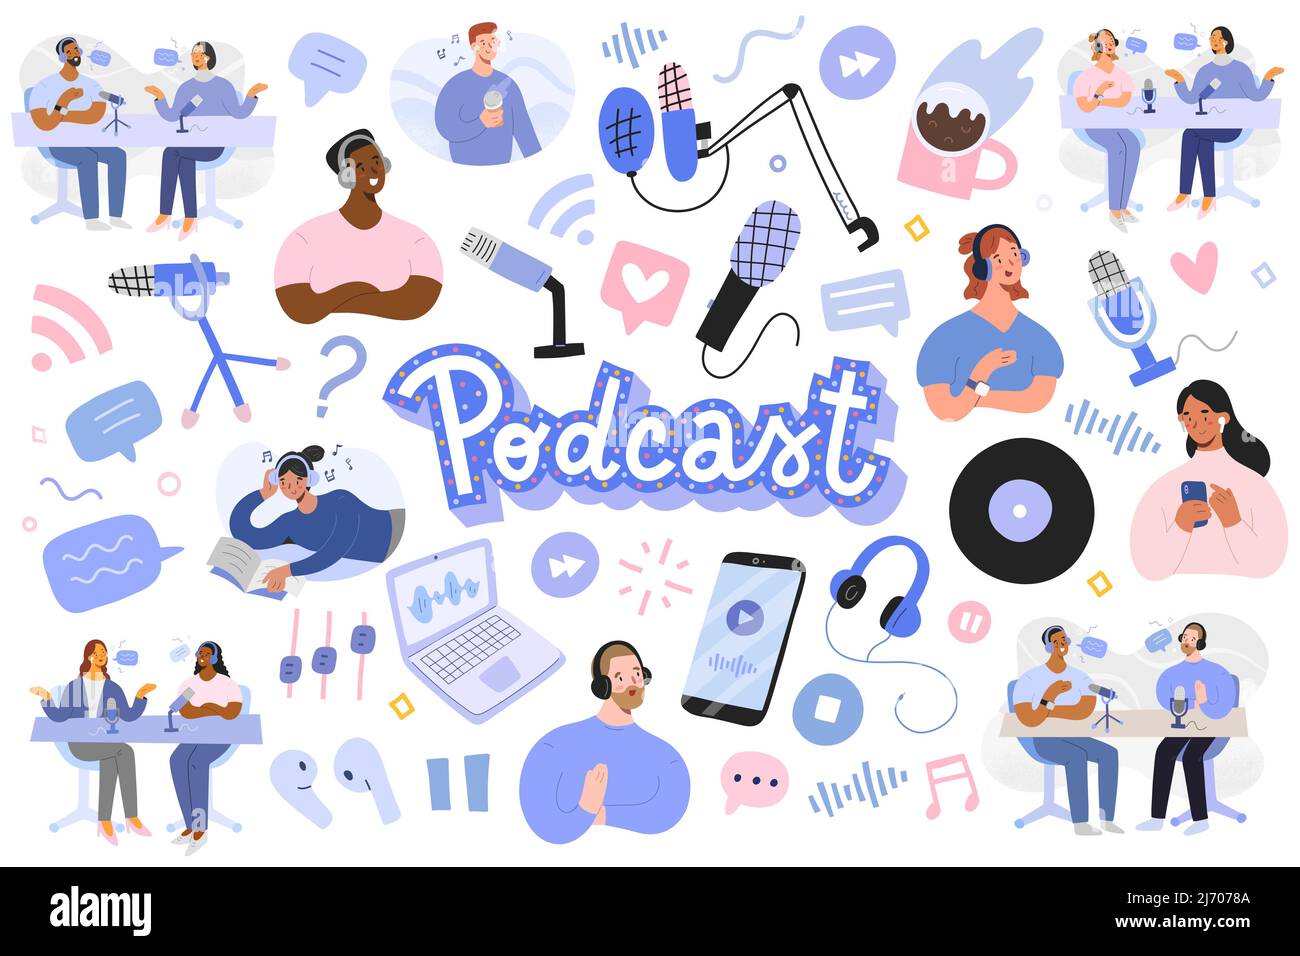 Podcast-Illustrationen, Podcasts und Zuhörer, Interview mit Moderatoren und Gastaufzeichnungen, Lautsprecher, Mikrofon und Headset-Objekte, Internetübertragung Stock Vektor